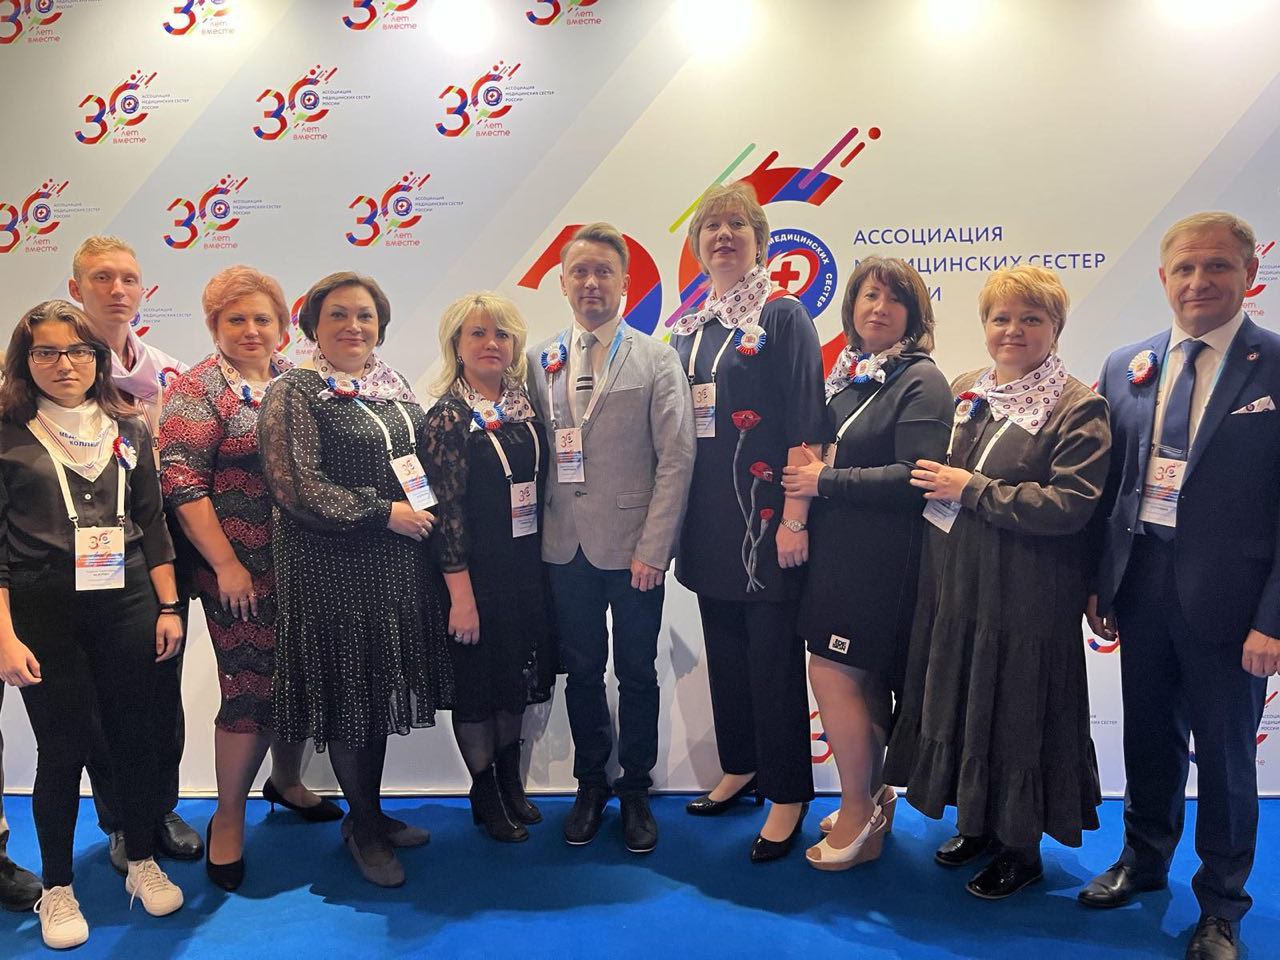 Ивановская область участвует в V конгрессе приуроченному к 30-летию РАМС